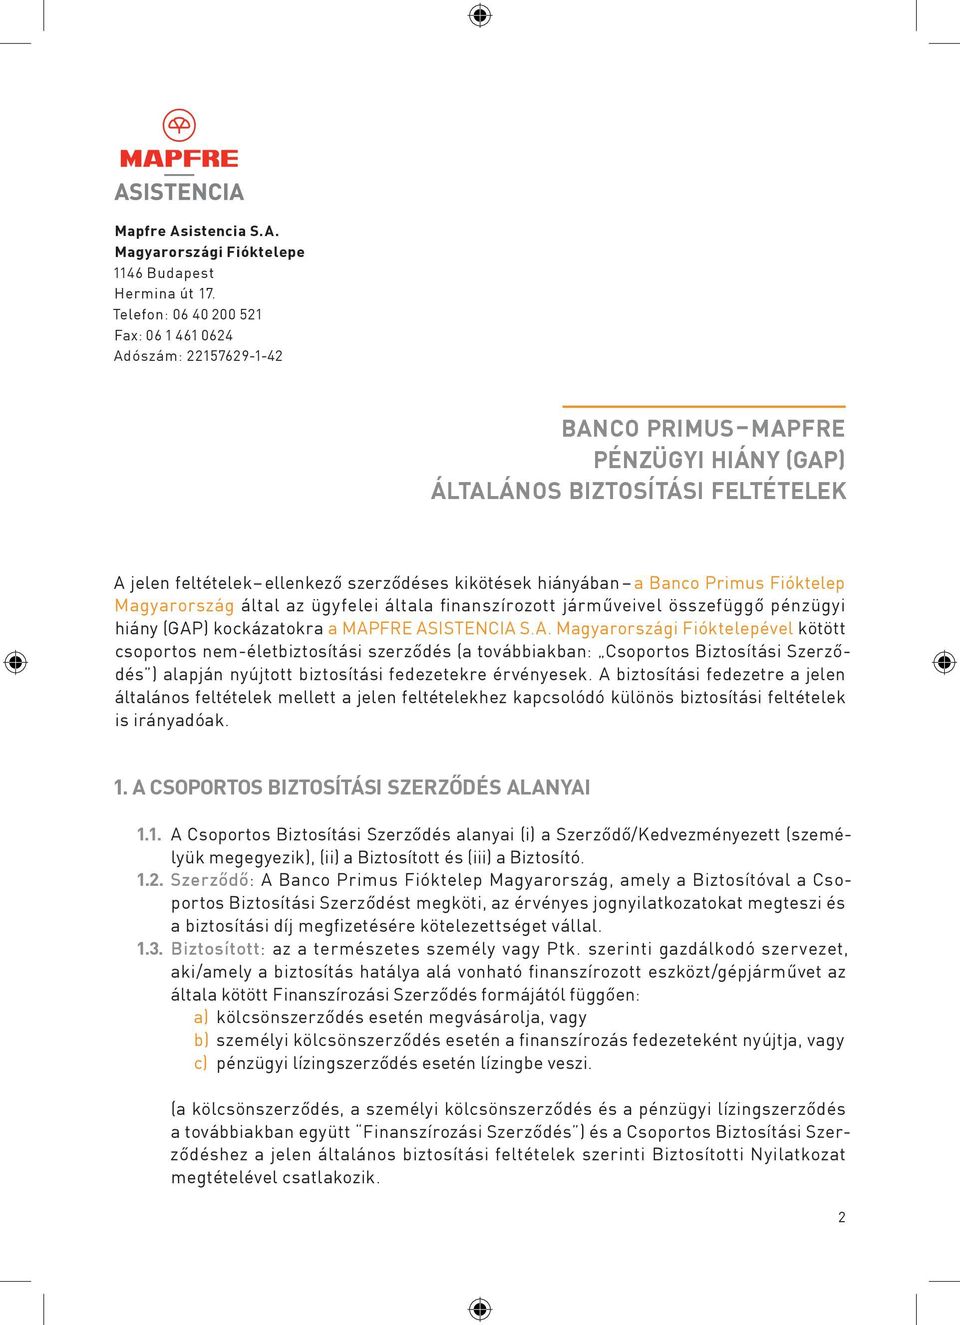 a Banco Primus Fióktelep Magyarország által az ügyfelei általa finanszírozott járműveivel összefüggő pénzügyi hiány (GAP